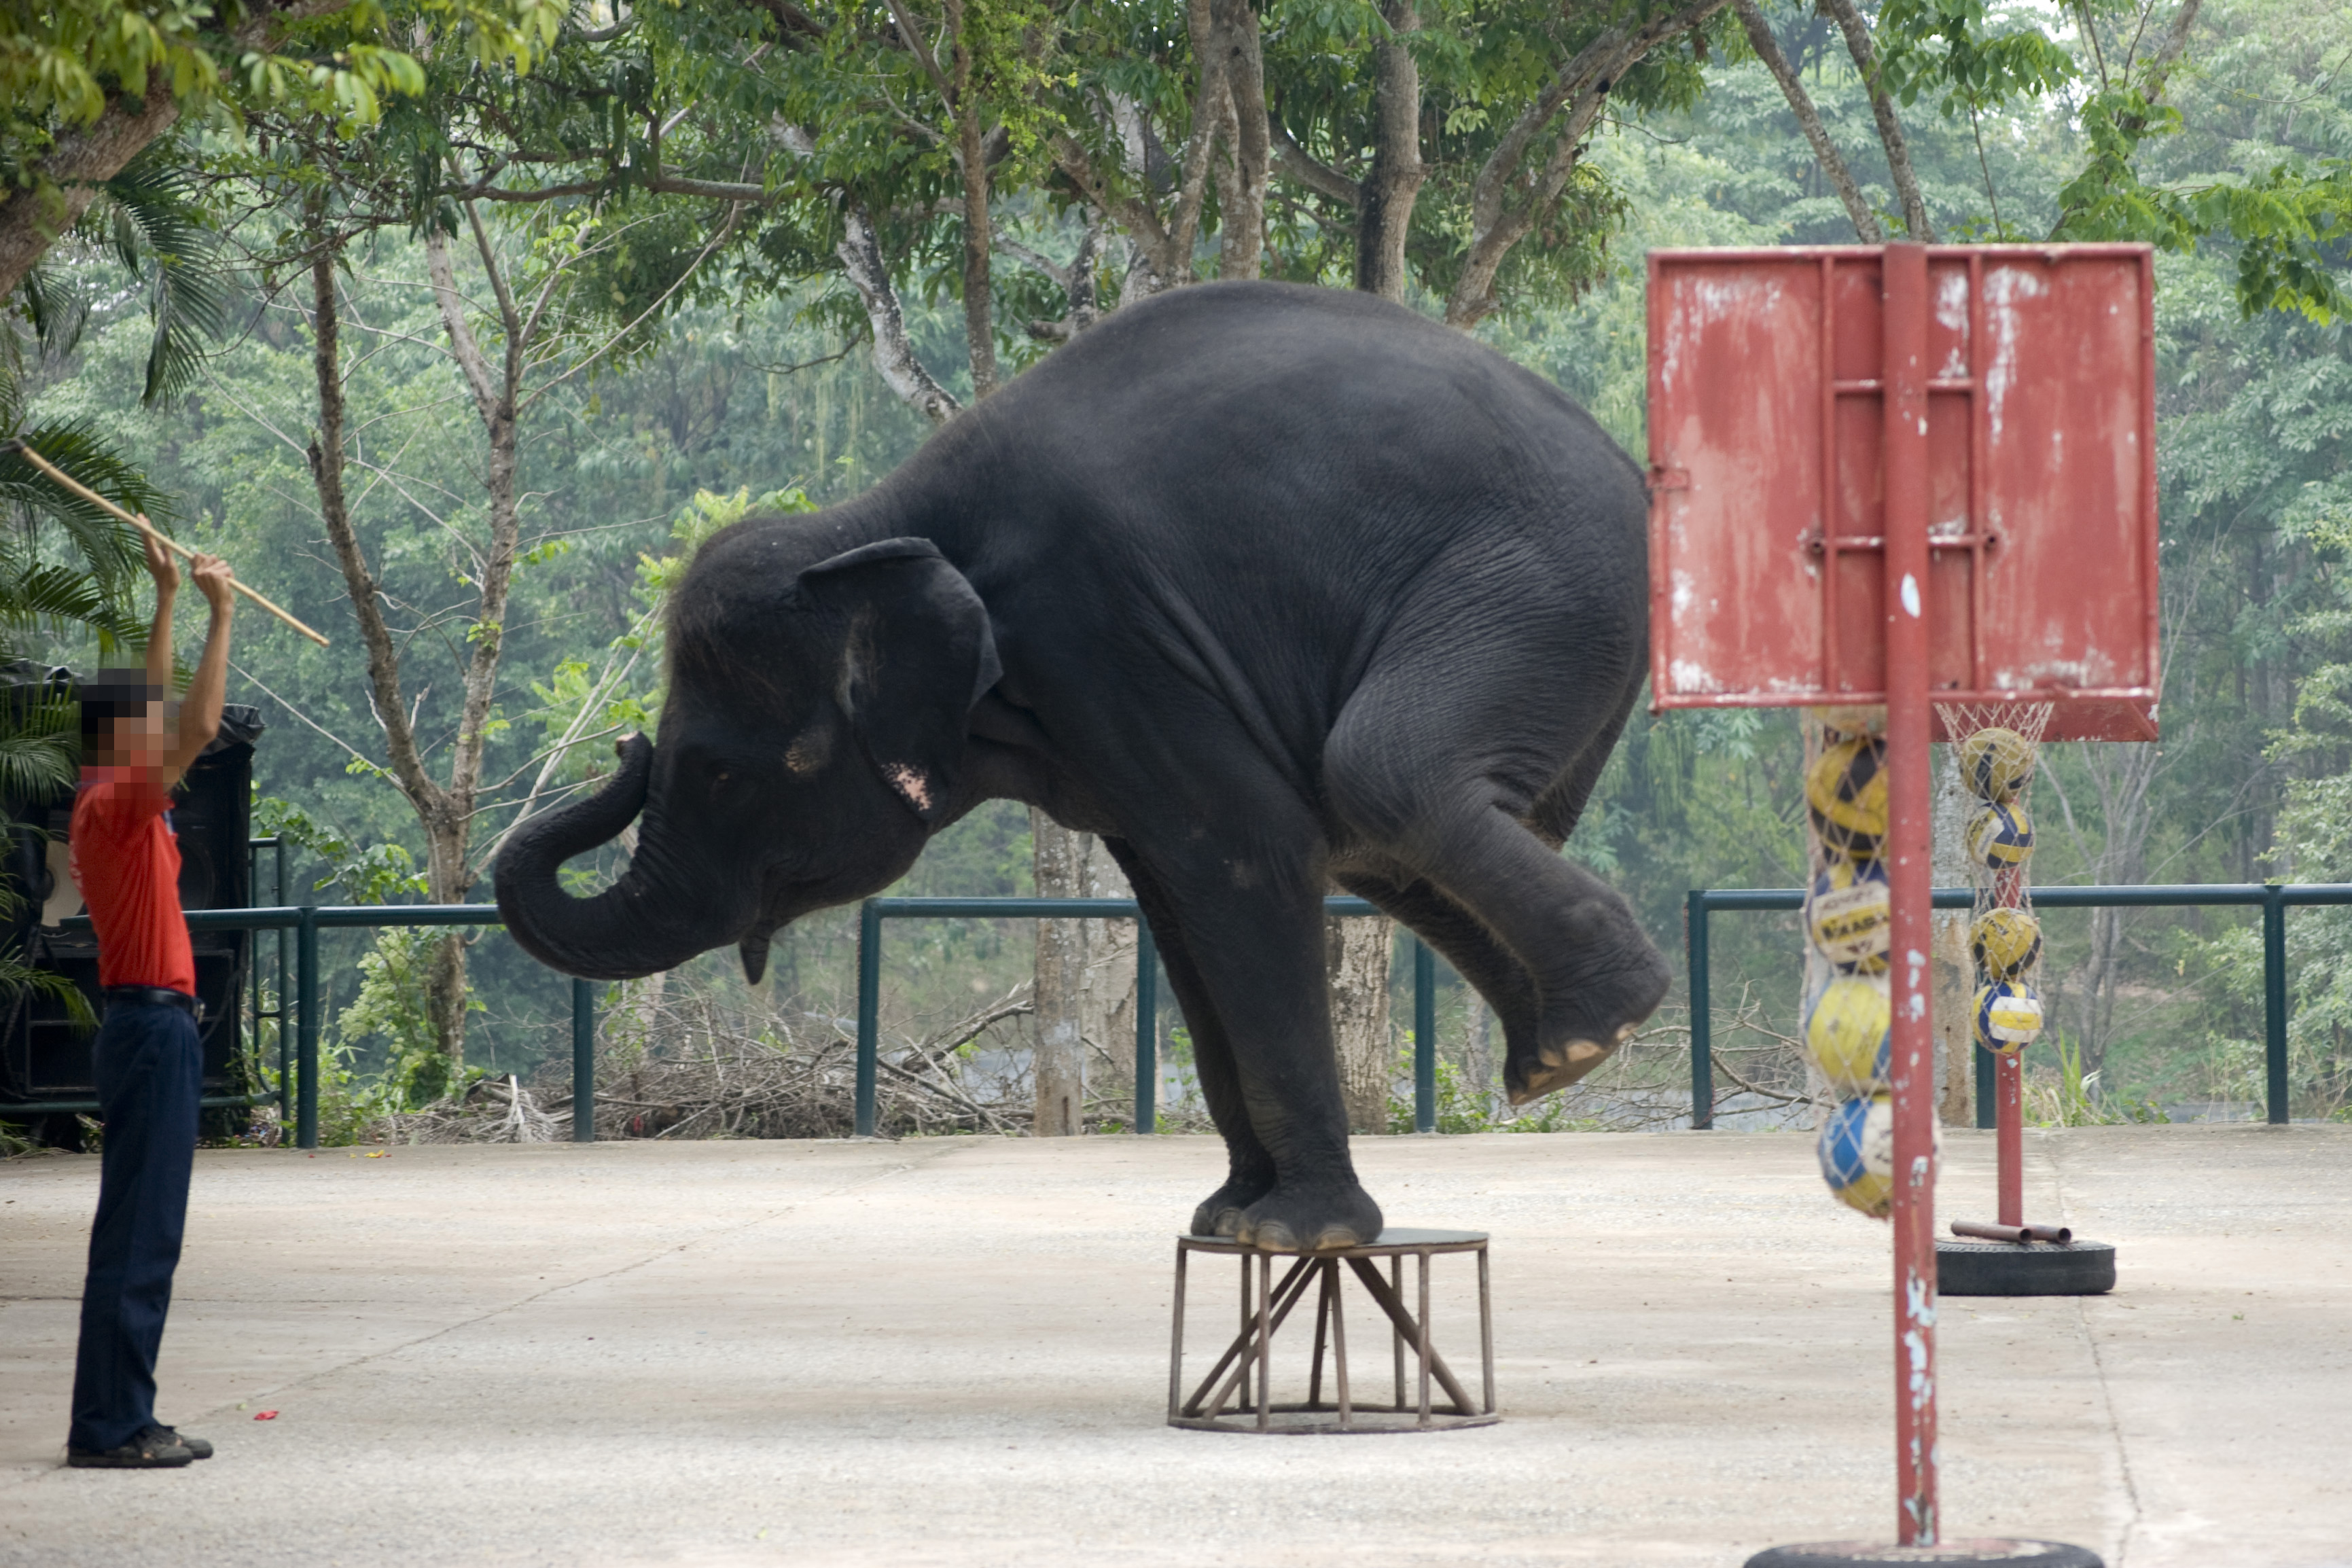 《东南亚旅游从业大象福利现状调查》：六成圈养大象生活在恶劣条件中